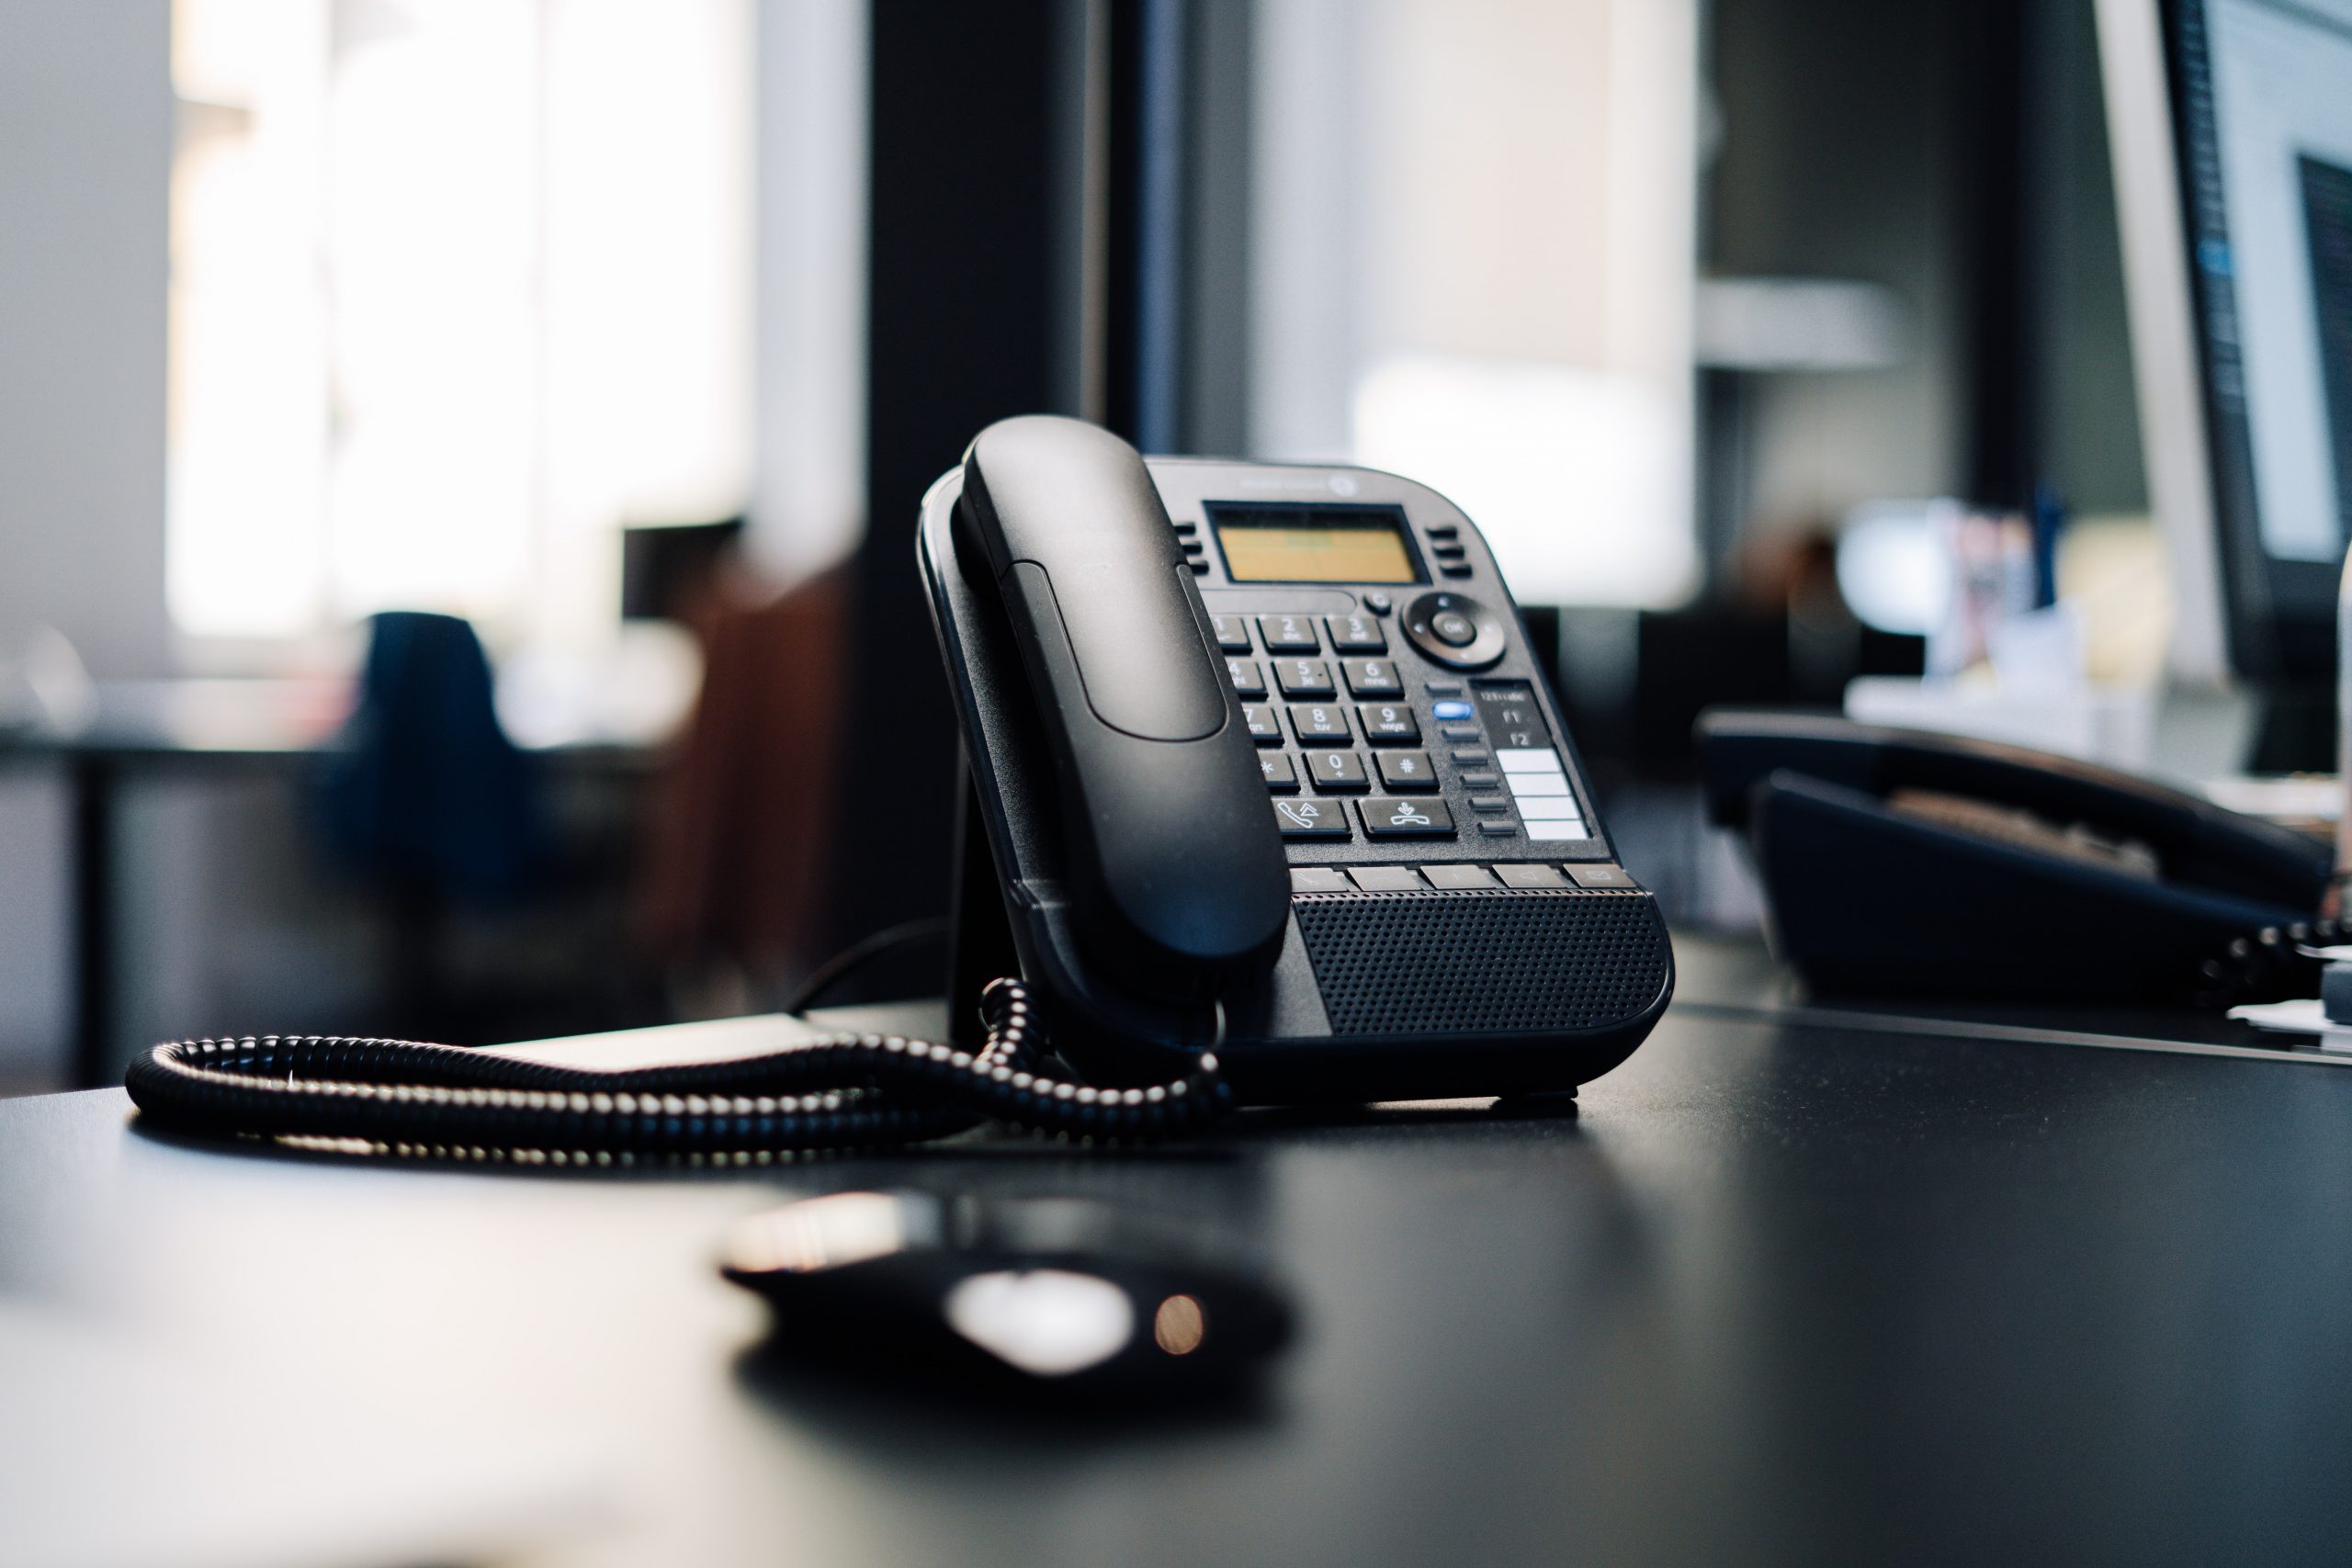 A black landline office phone sits on a black desk.